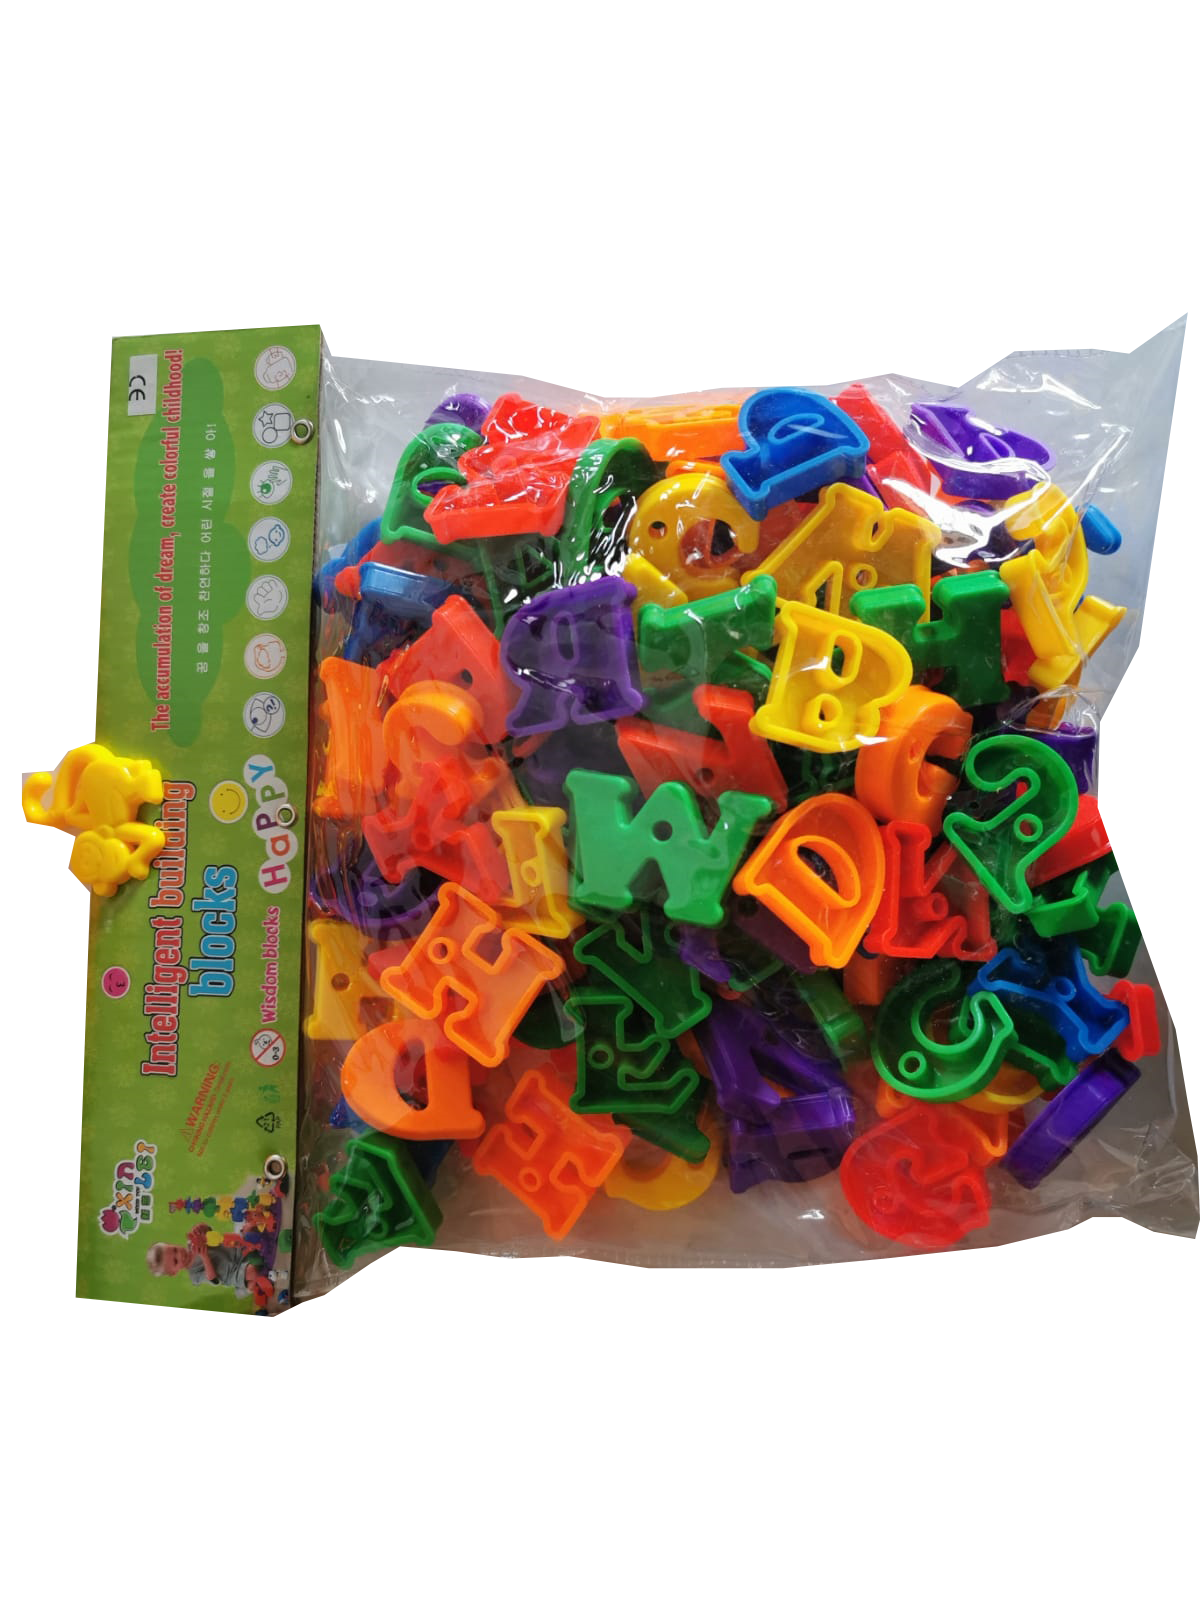 Jocul contine   litere din plastic.
Literele sunt in 8 culori: verde inchis, verde deschis, violet, albastru, albastru deschis, portocaliu, galben, rosu.
